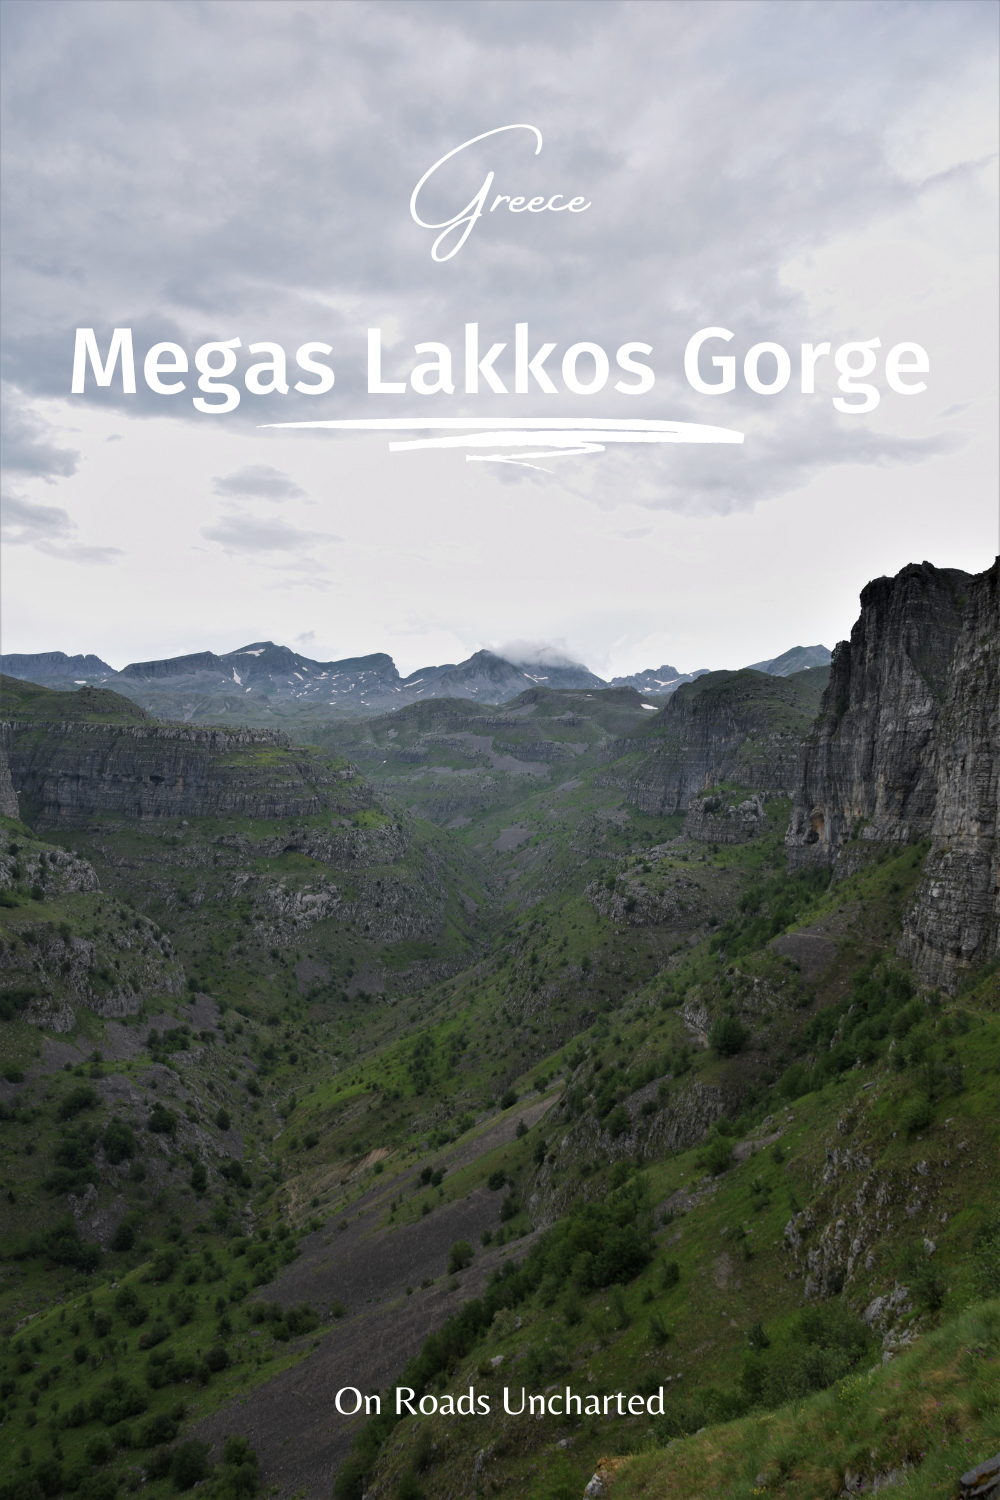 Megas Lakkos Gorge pin